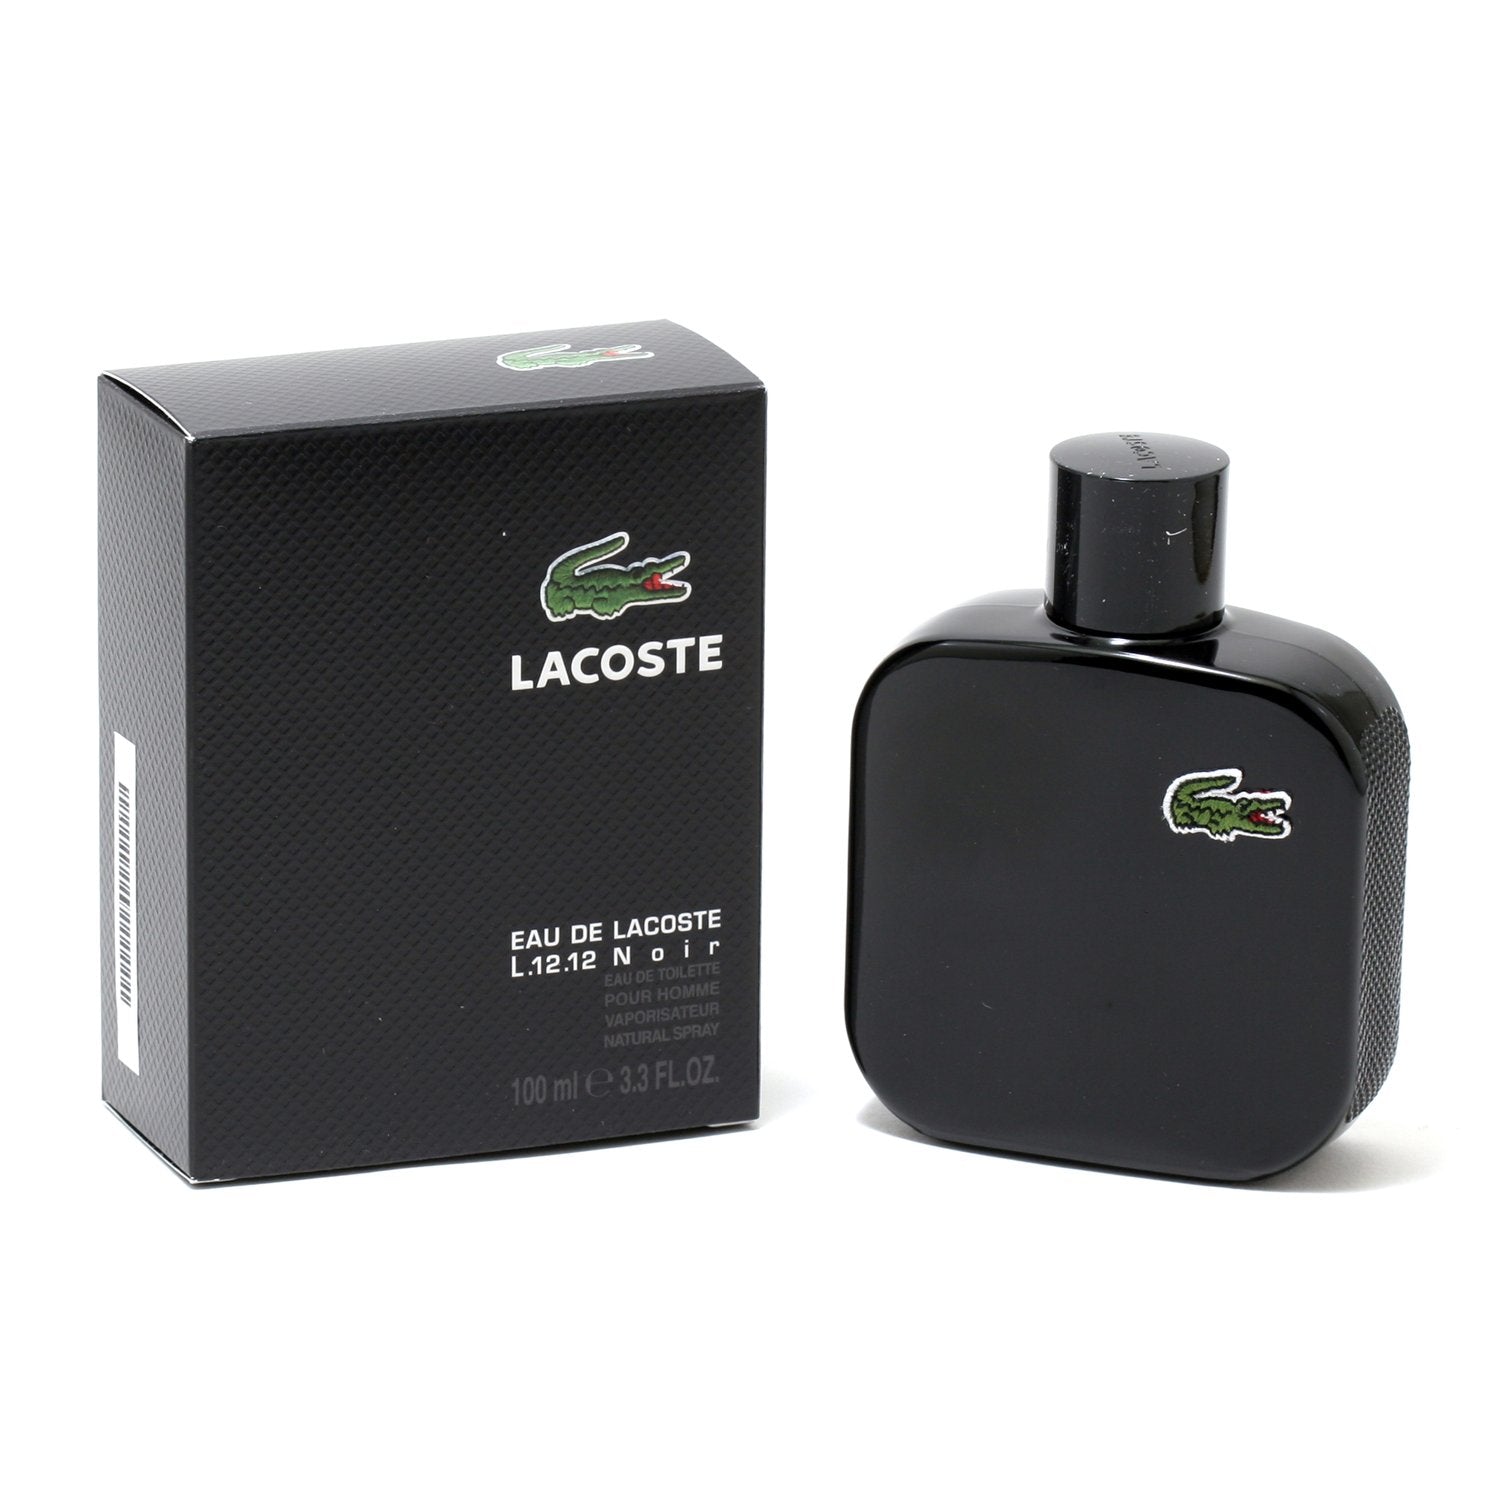 LACOSTE EAU DE LACOSTE L.1212 NOIR FOR MEN - DE TOILETTE SPRAY, 3. – Fragrance Room